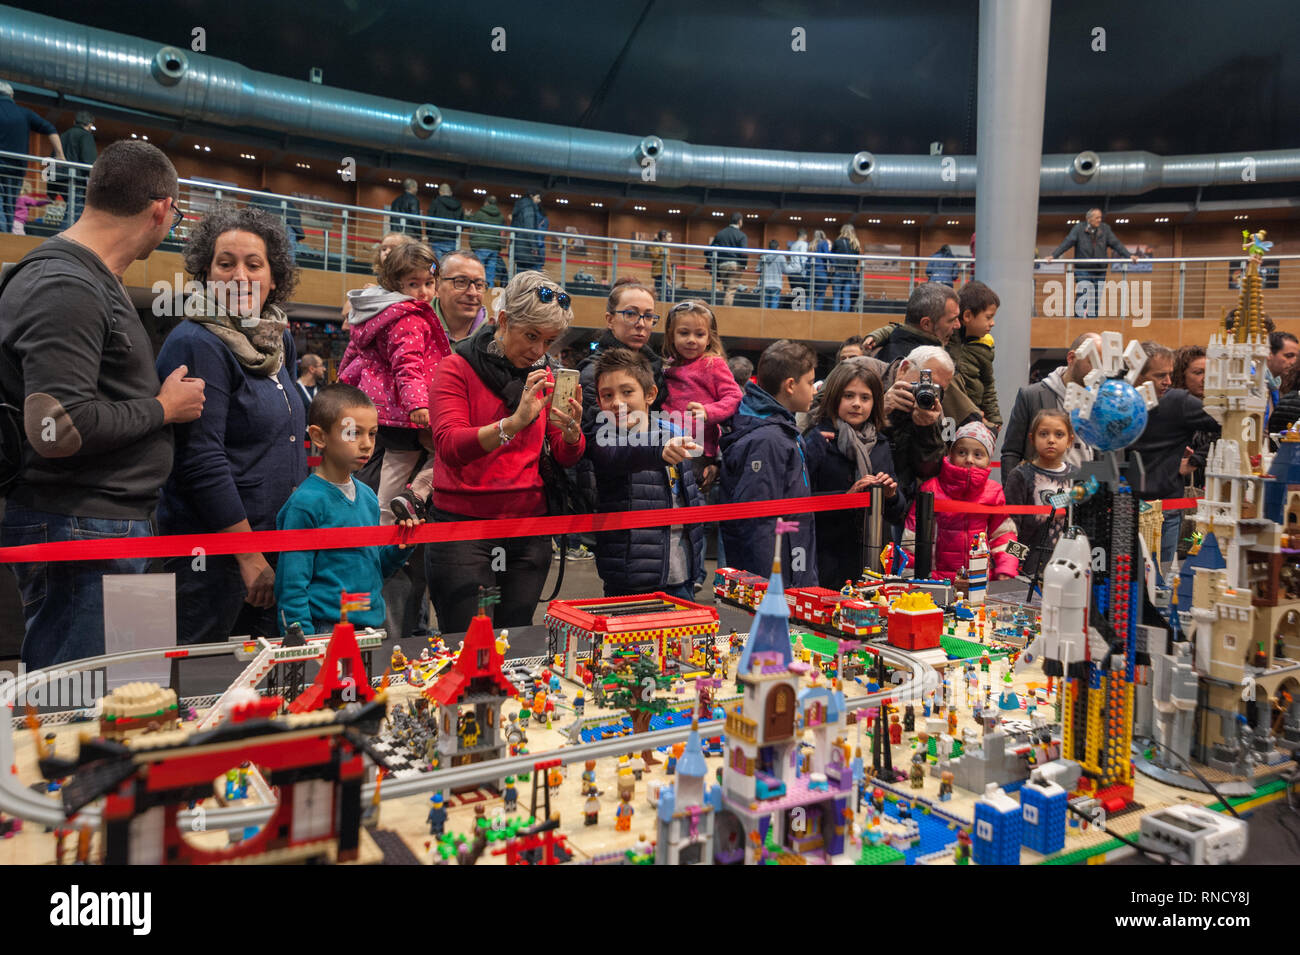 Firenze, Italia - 11 Novembre 2017: Visitatori presso la "Firenze mattoni Festival' ammirato un modello costruito interamente con Lego mattoni in plastica. Foto Stock